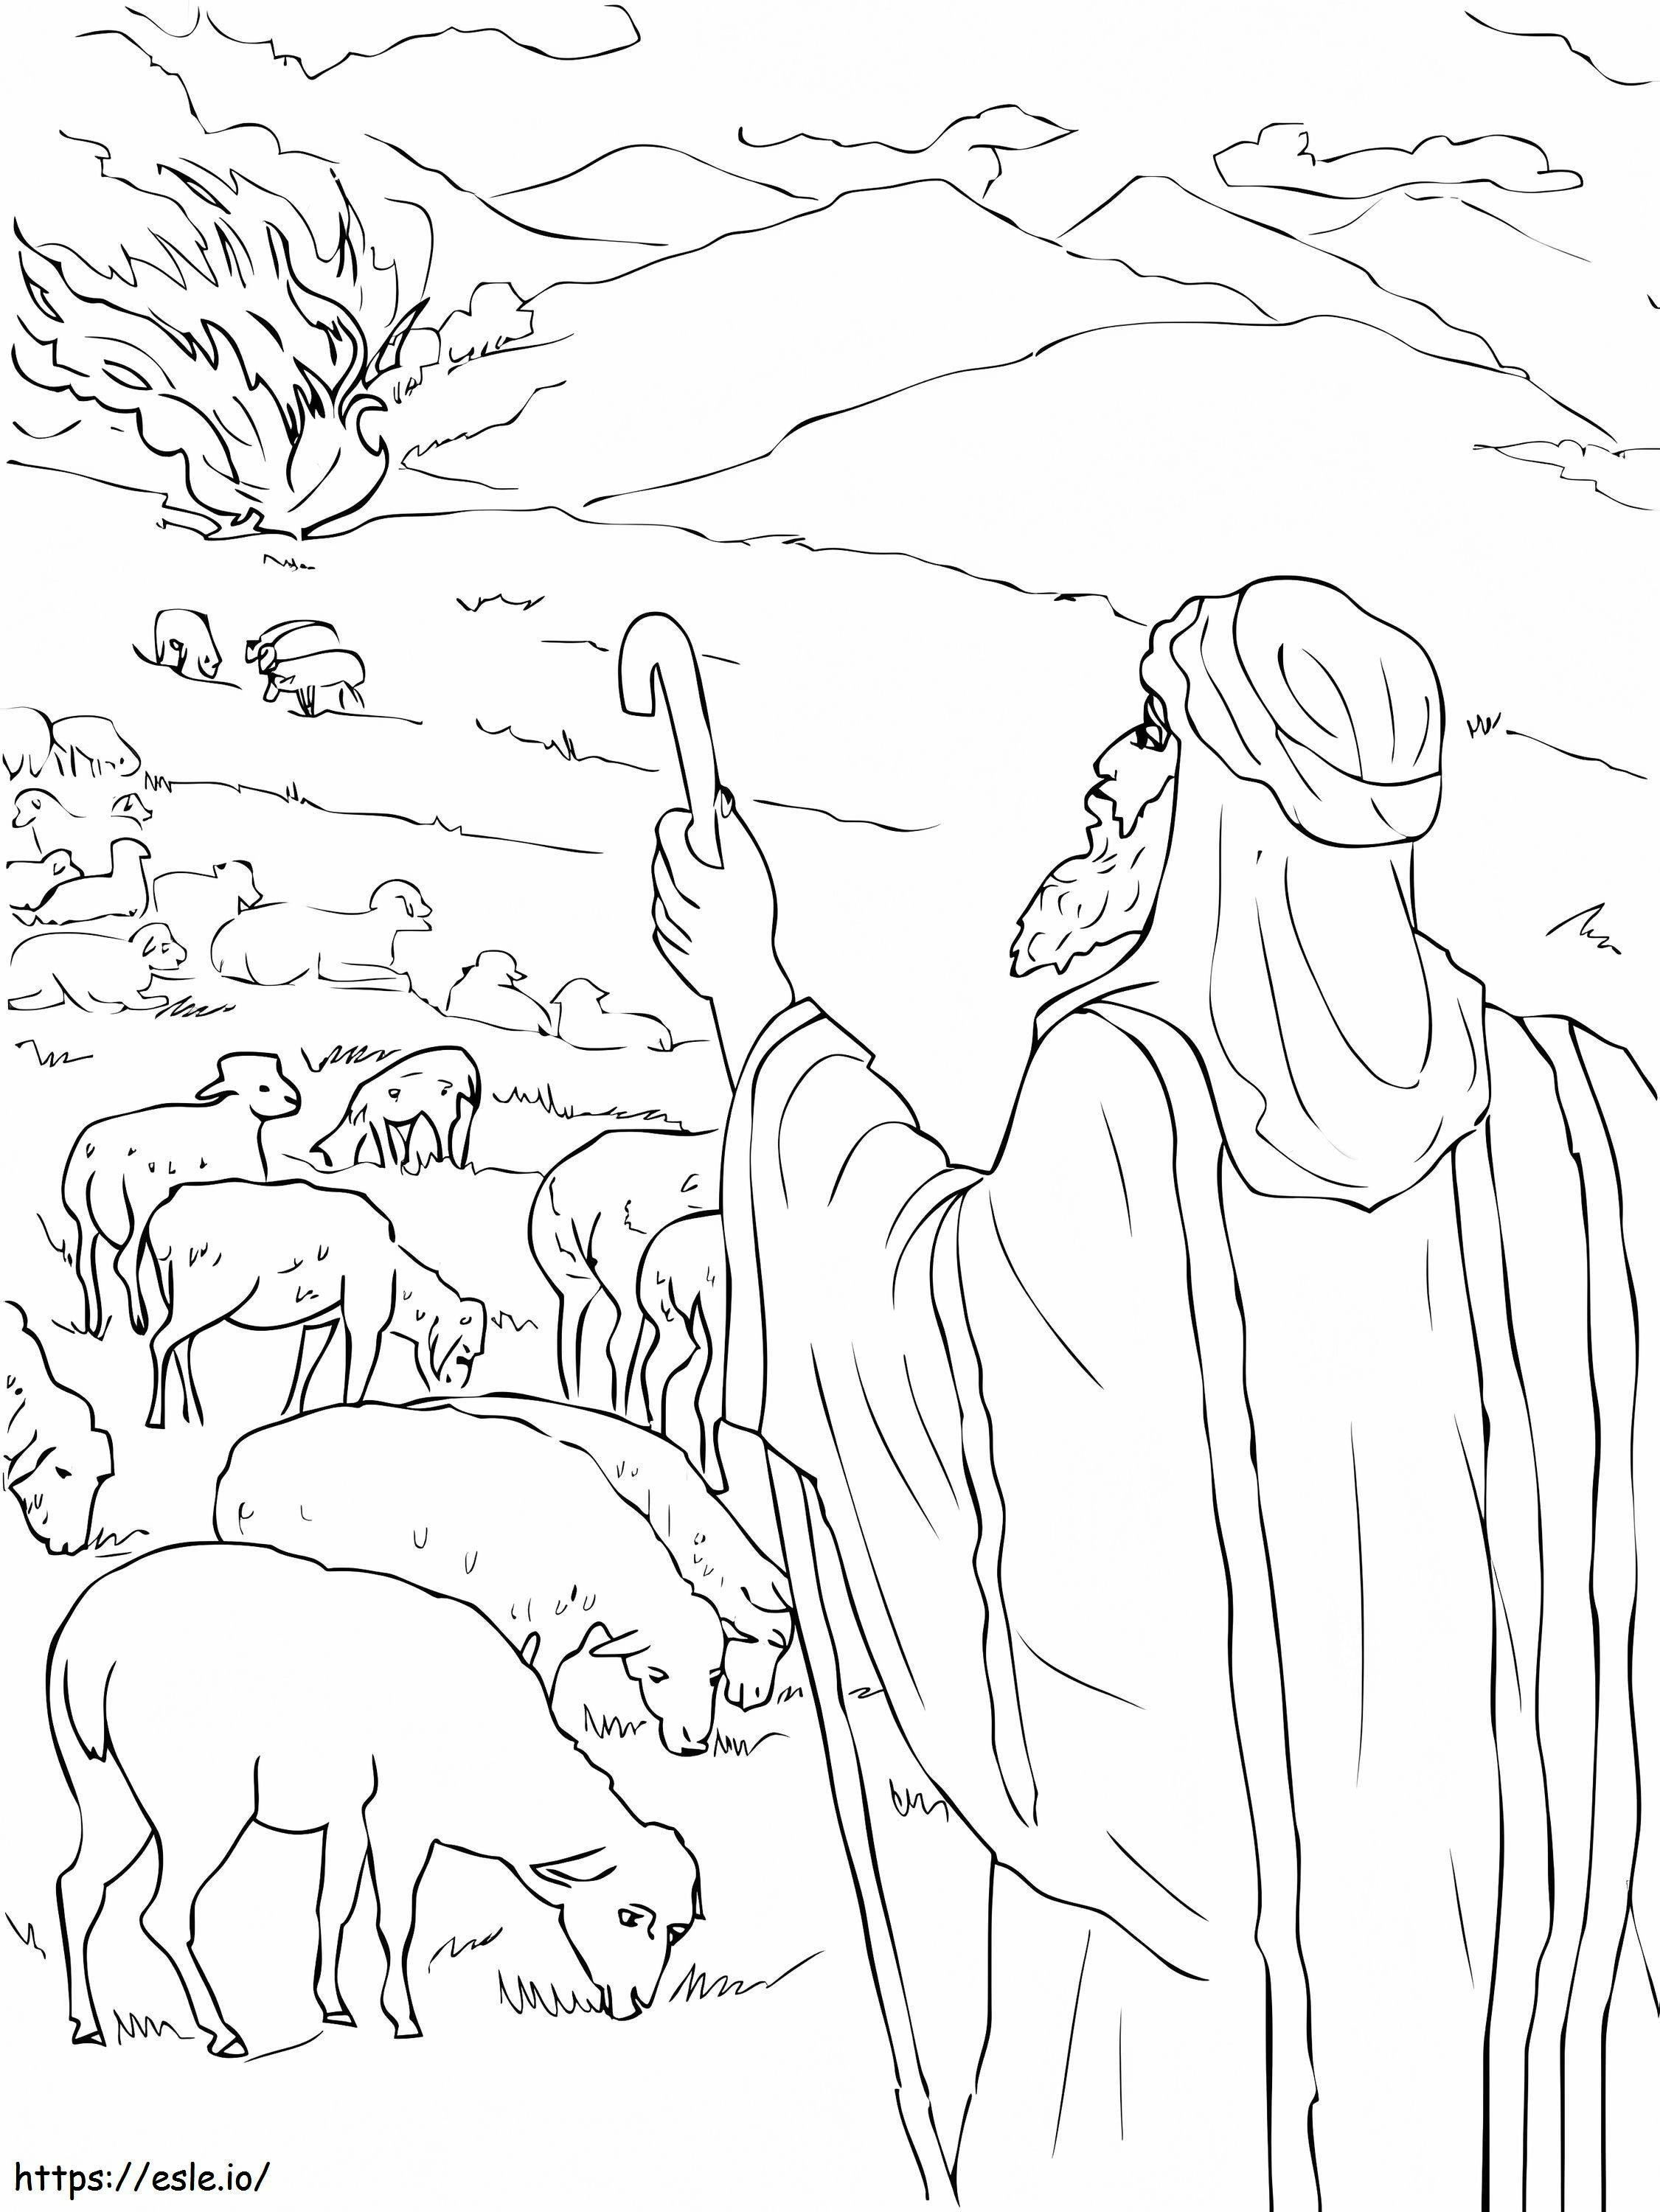 Mojżesz widzi płonący krzak kolorowanka